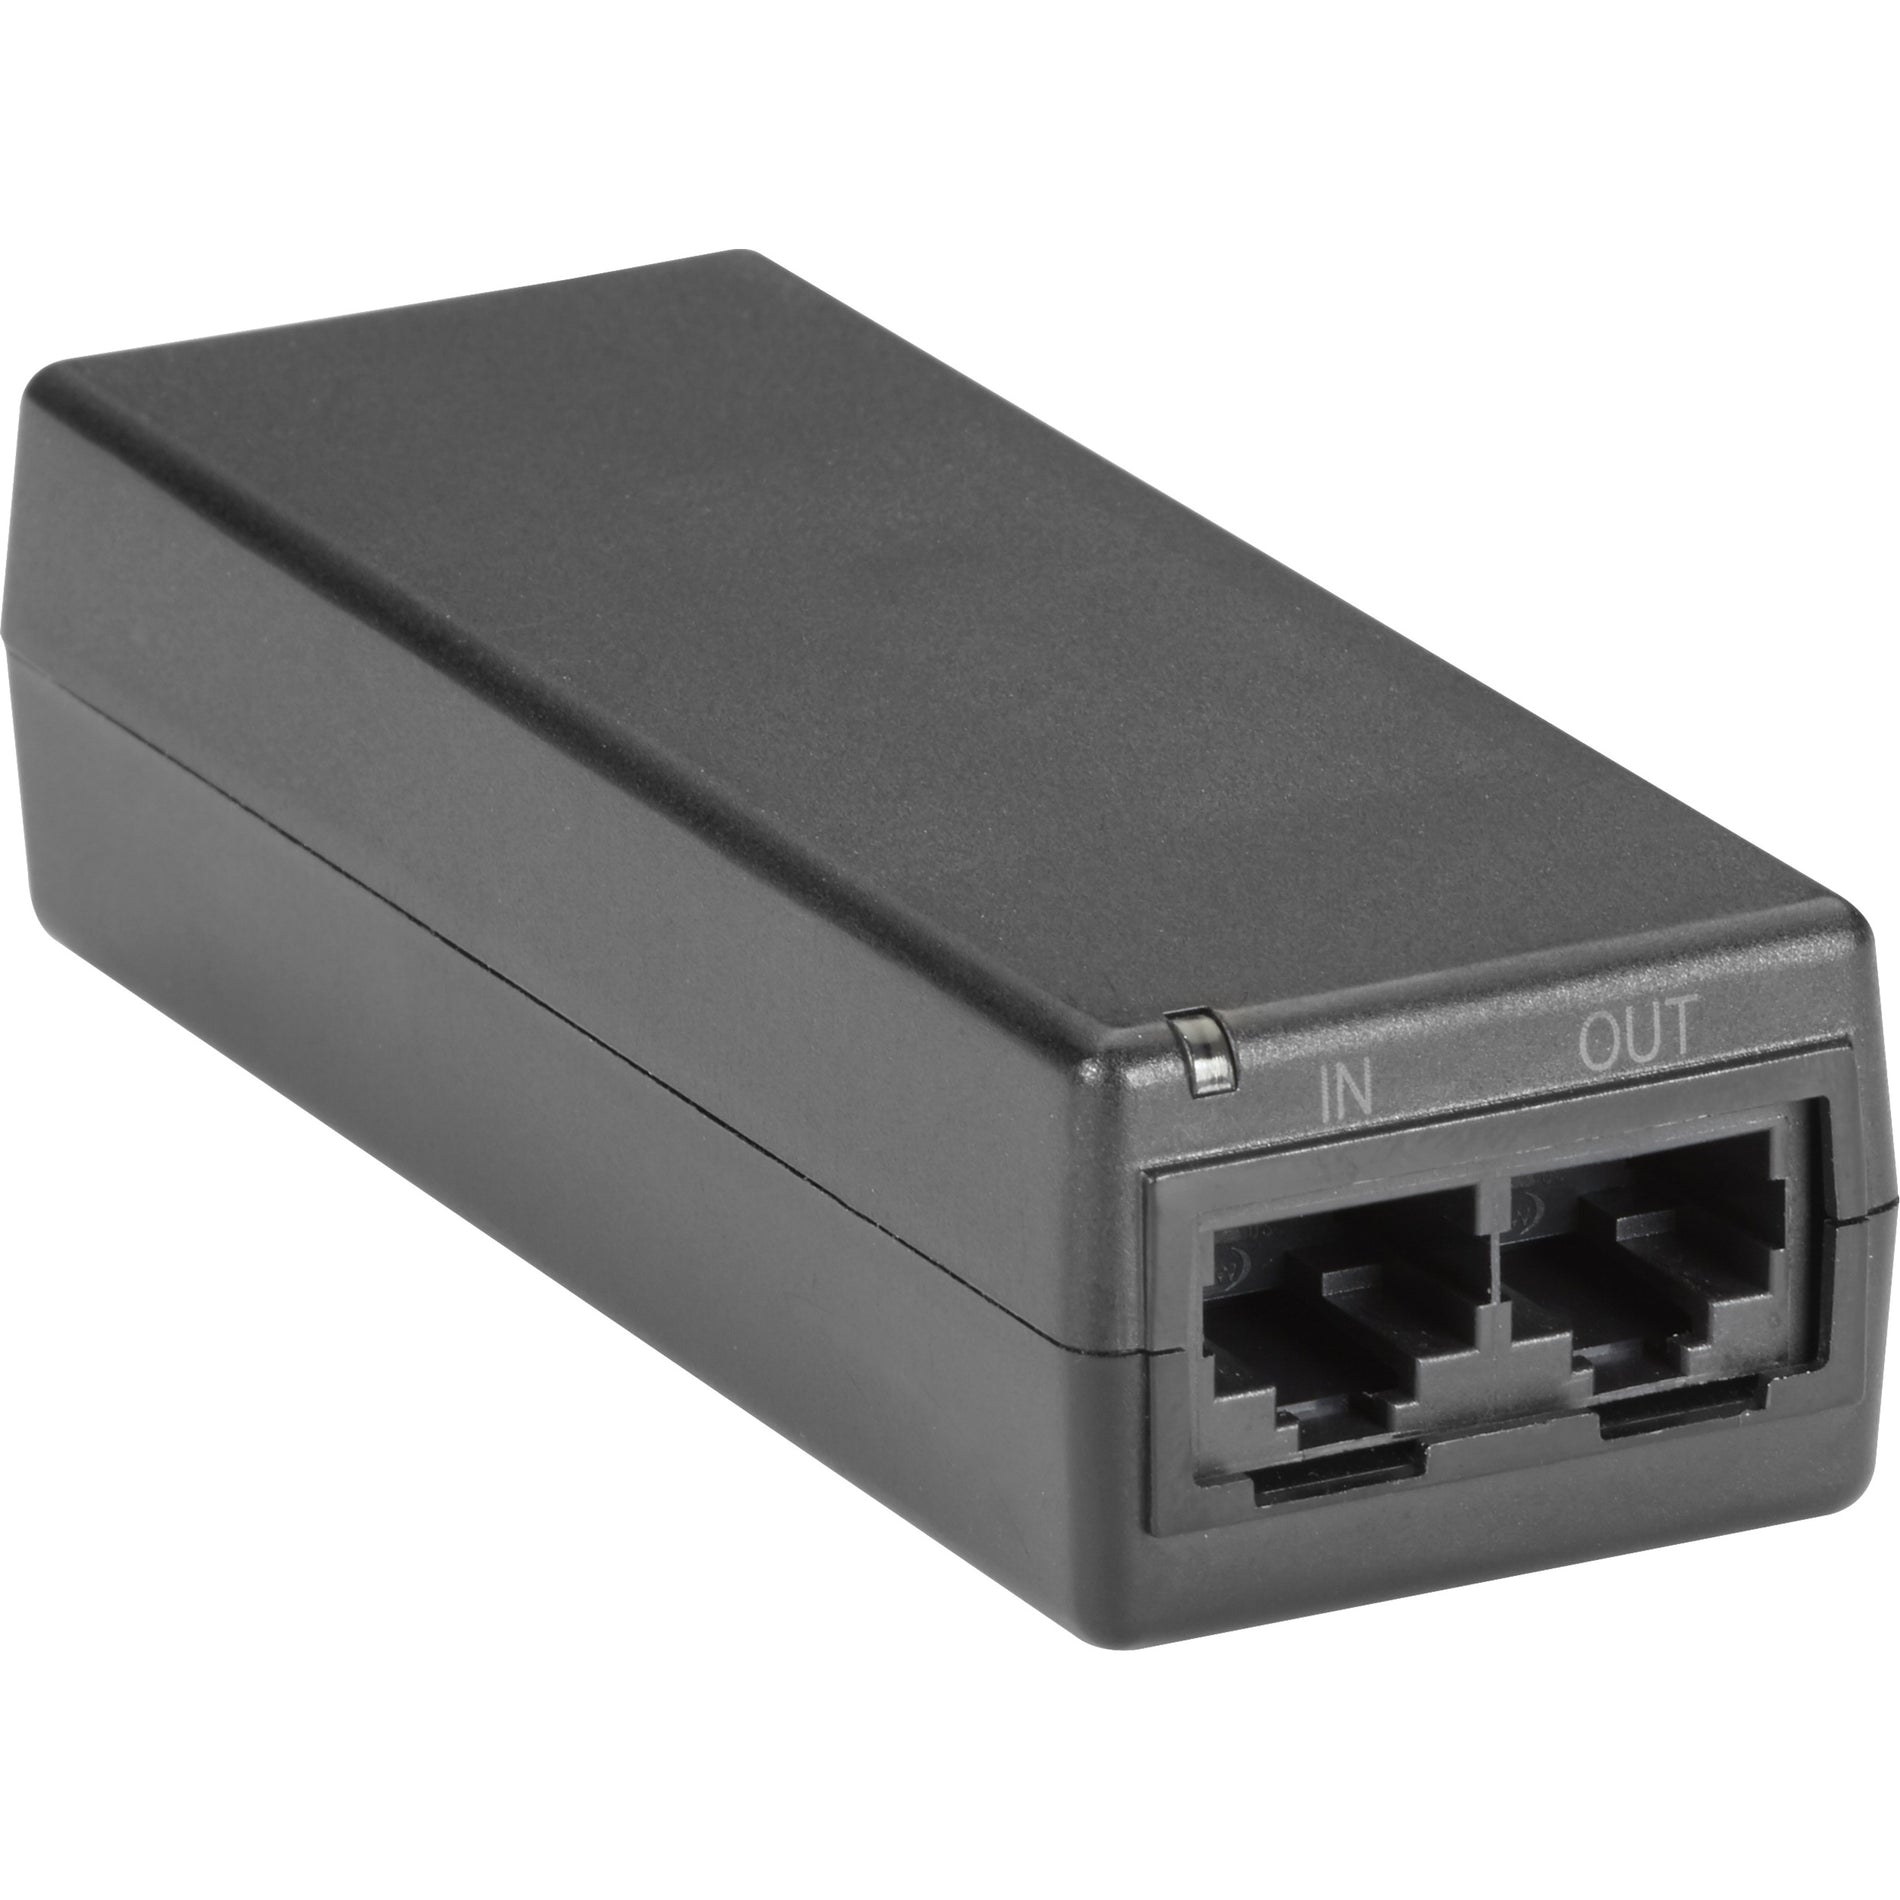 Black Box LPJ000A-F-R3 PoE Gigabit Ethernet Injector - 802.3af, 1 Year Warranty, Environmentally Friendly, 15W Output Power